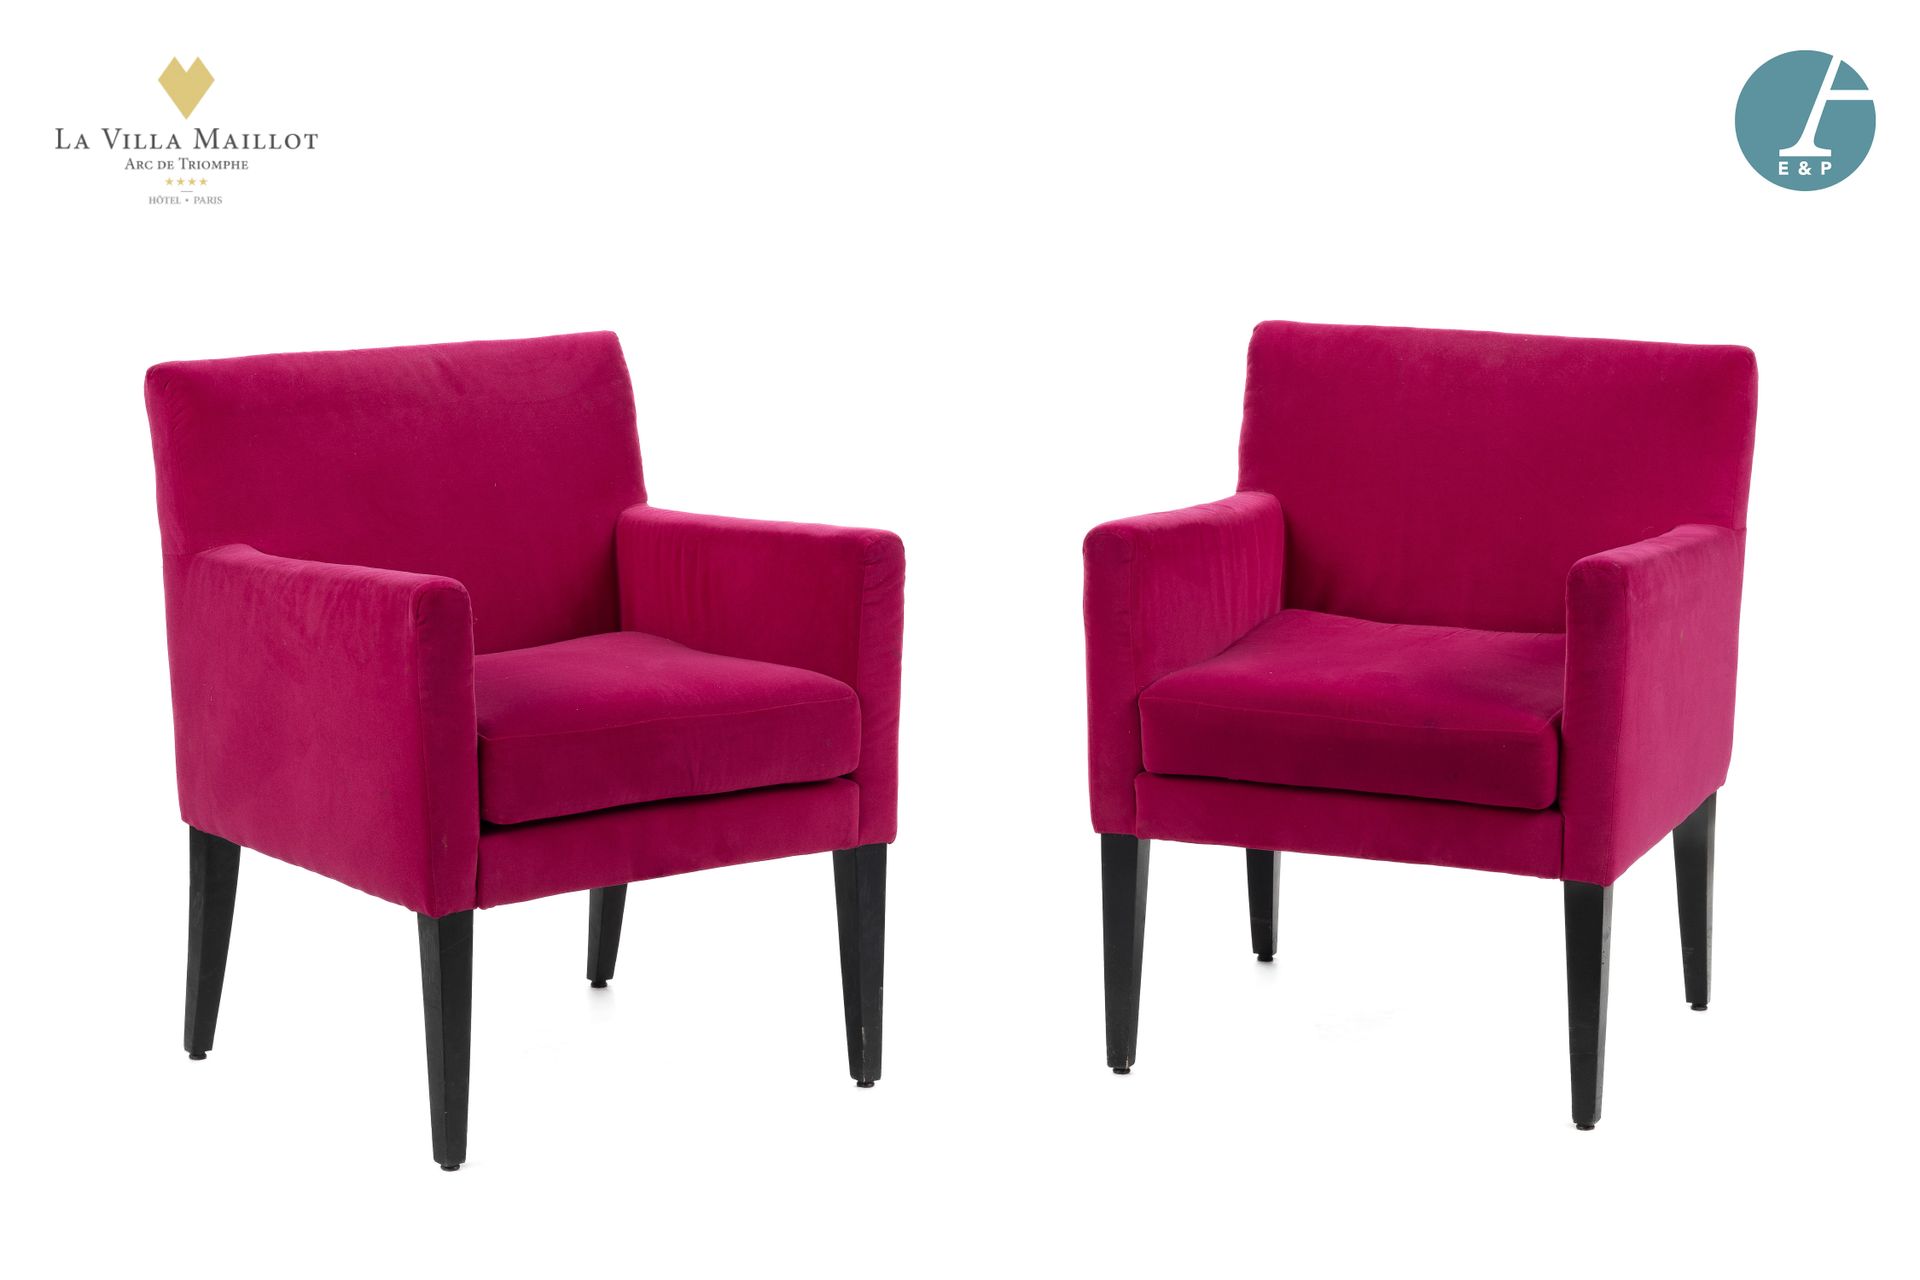 Null 一对扶手椅完全用紫红色的天鹅绒装饰，直背和扶手用天鹅绒装饰，座椅用天鹅绒覆盖的泡沫垫，前面是熏黑的木鞘腿，后面是木质马刀脚，木质滑轨。
高度：77厘米&hellip;